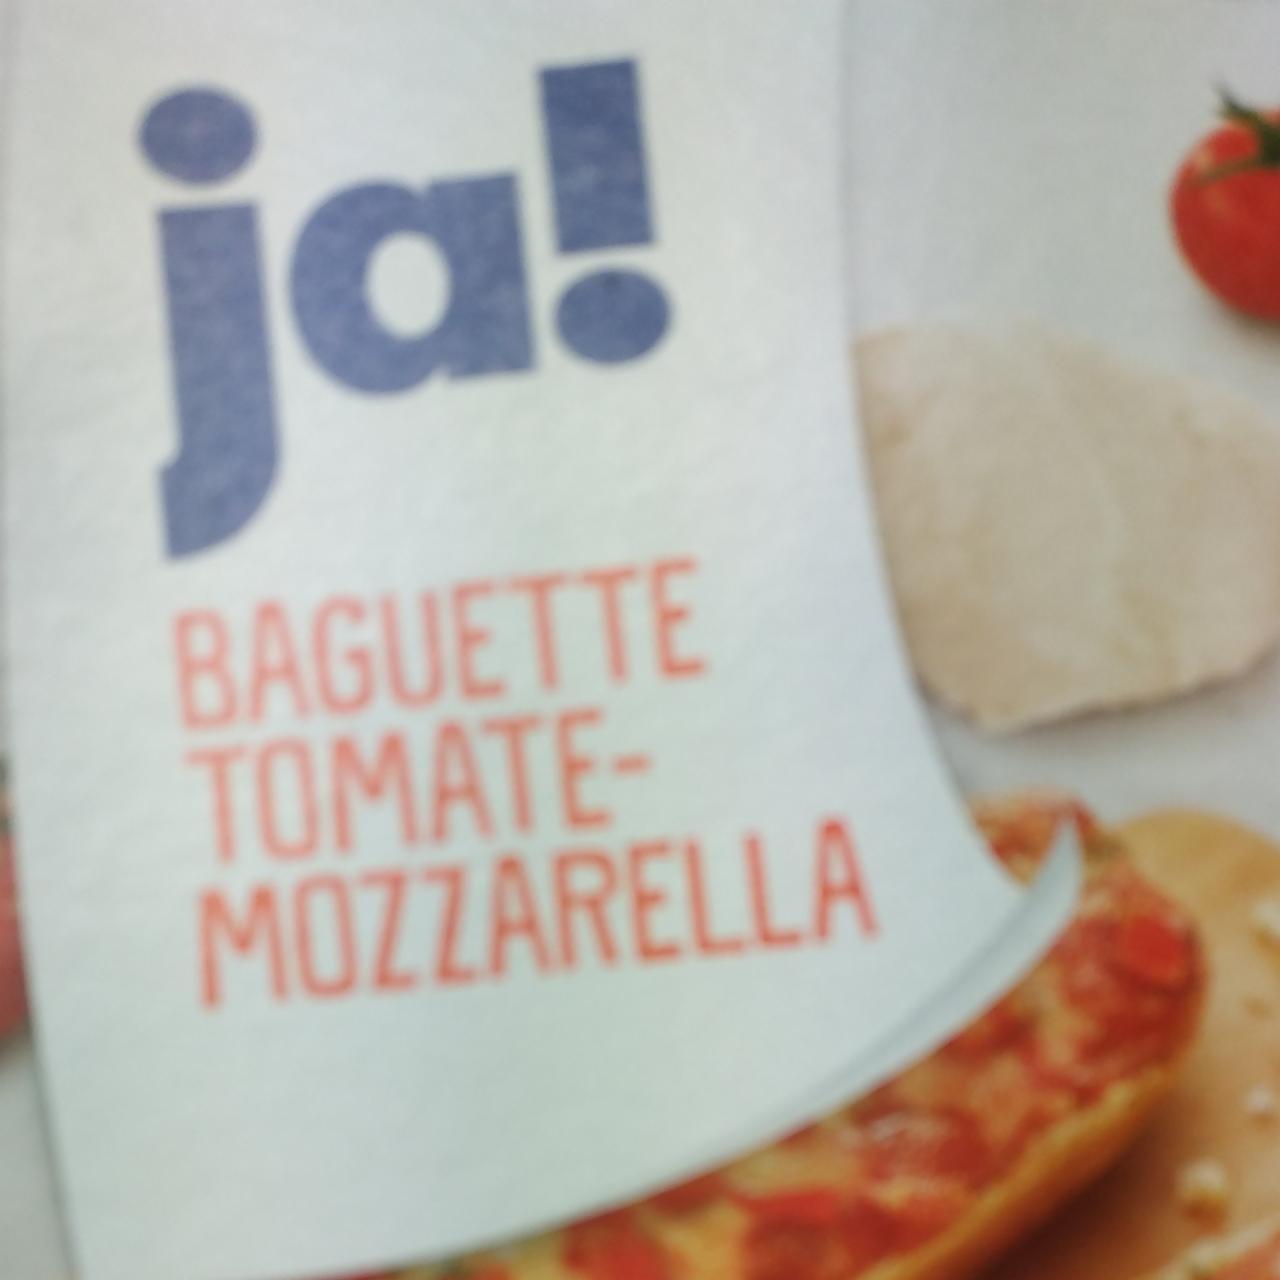 Фото - Брускетта с помидором и моцареллой Baguette Tomate-Mozzarella Ja!